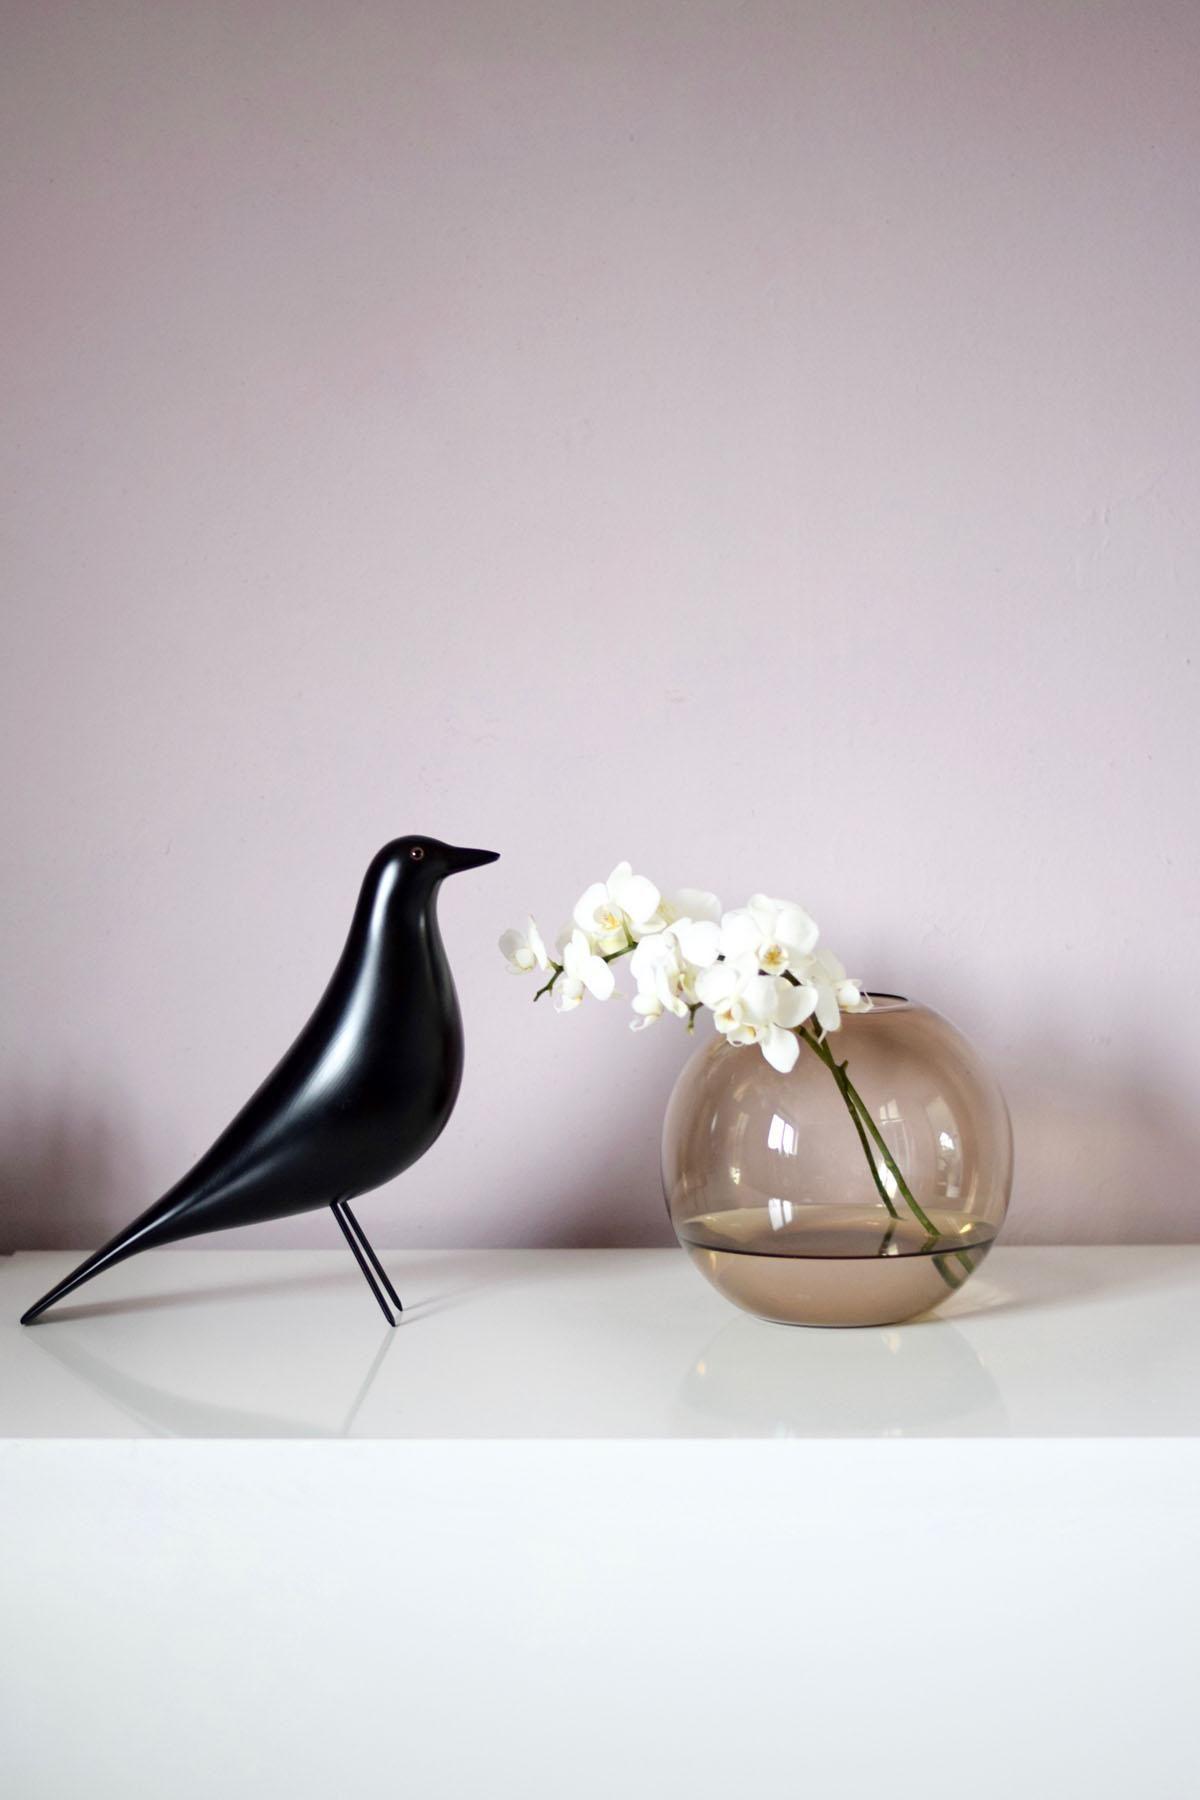 Soft-pudrige Töne mit etwas Schwarz kombiniert finde ich so richtig schön...
#vitra #housebird #mauve #orchideen